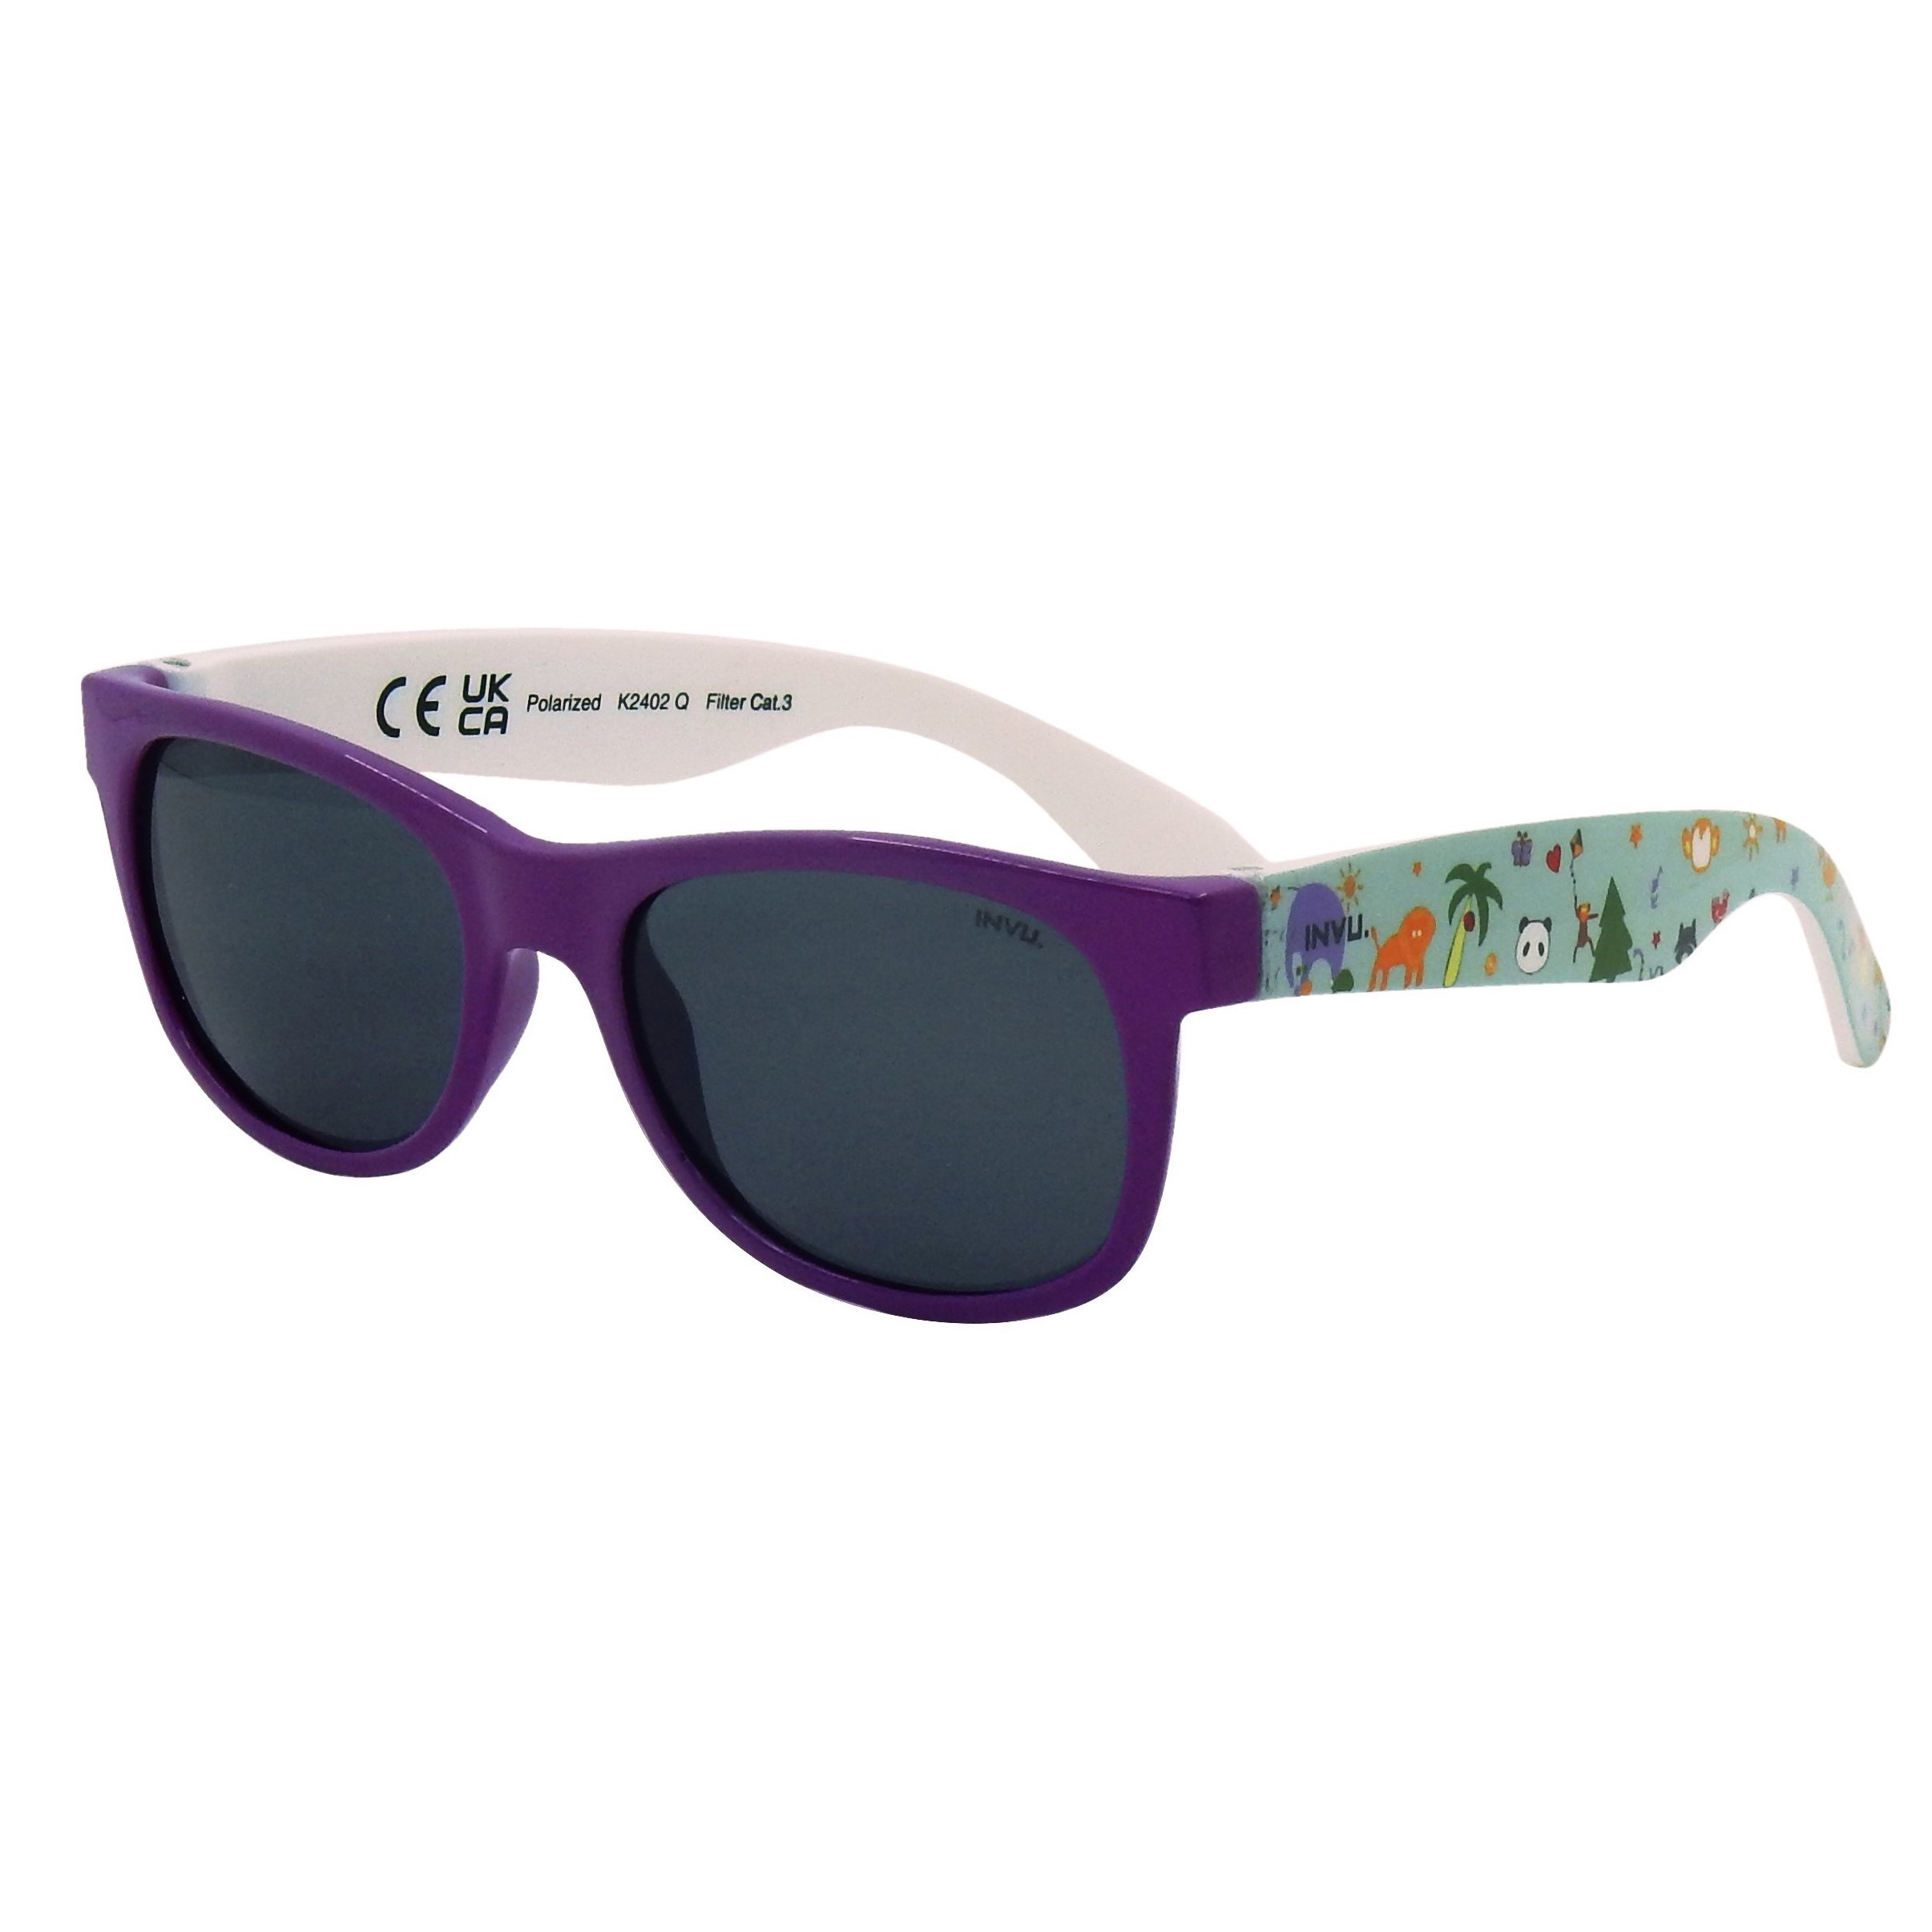 

Сонцезахисні окуляри INVU Вайфарери фіолетові (2402Q_K)